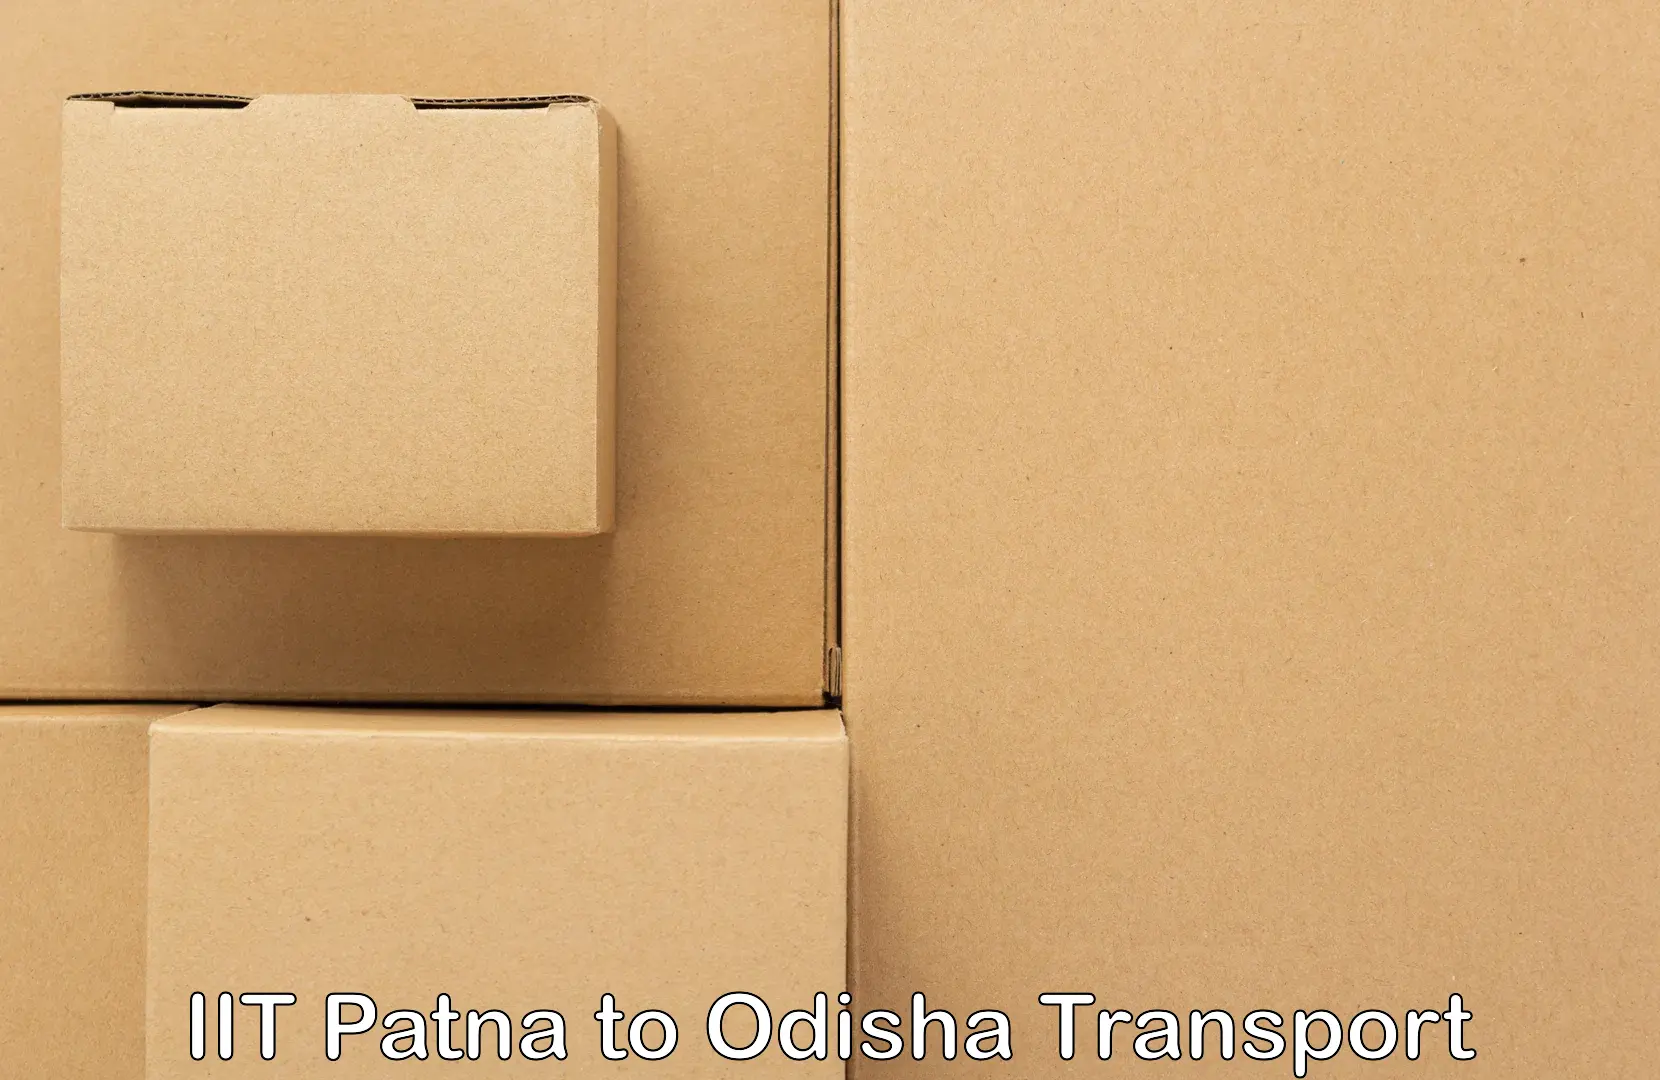 Online transport in IIT Patna to Rourkela